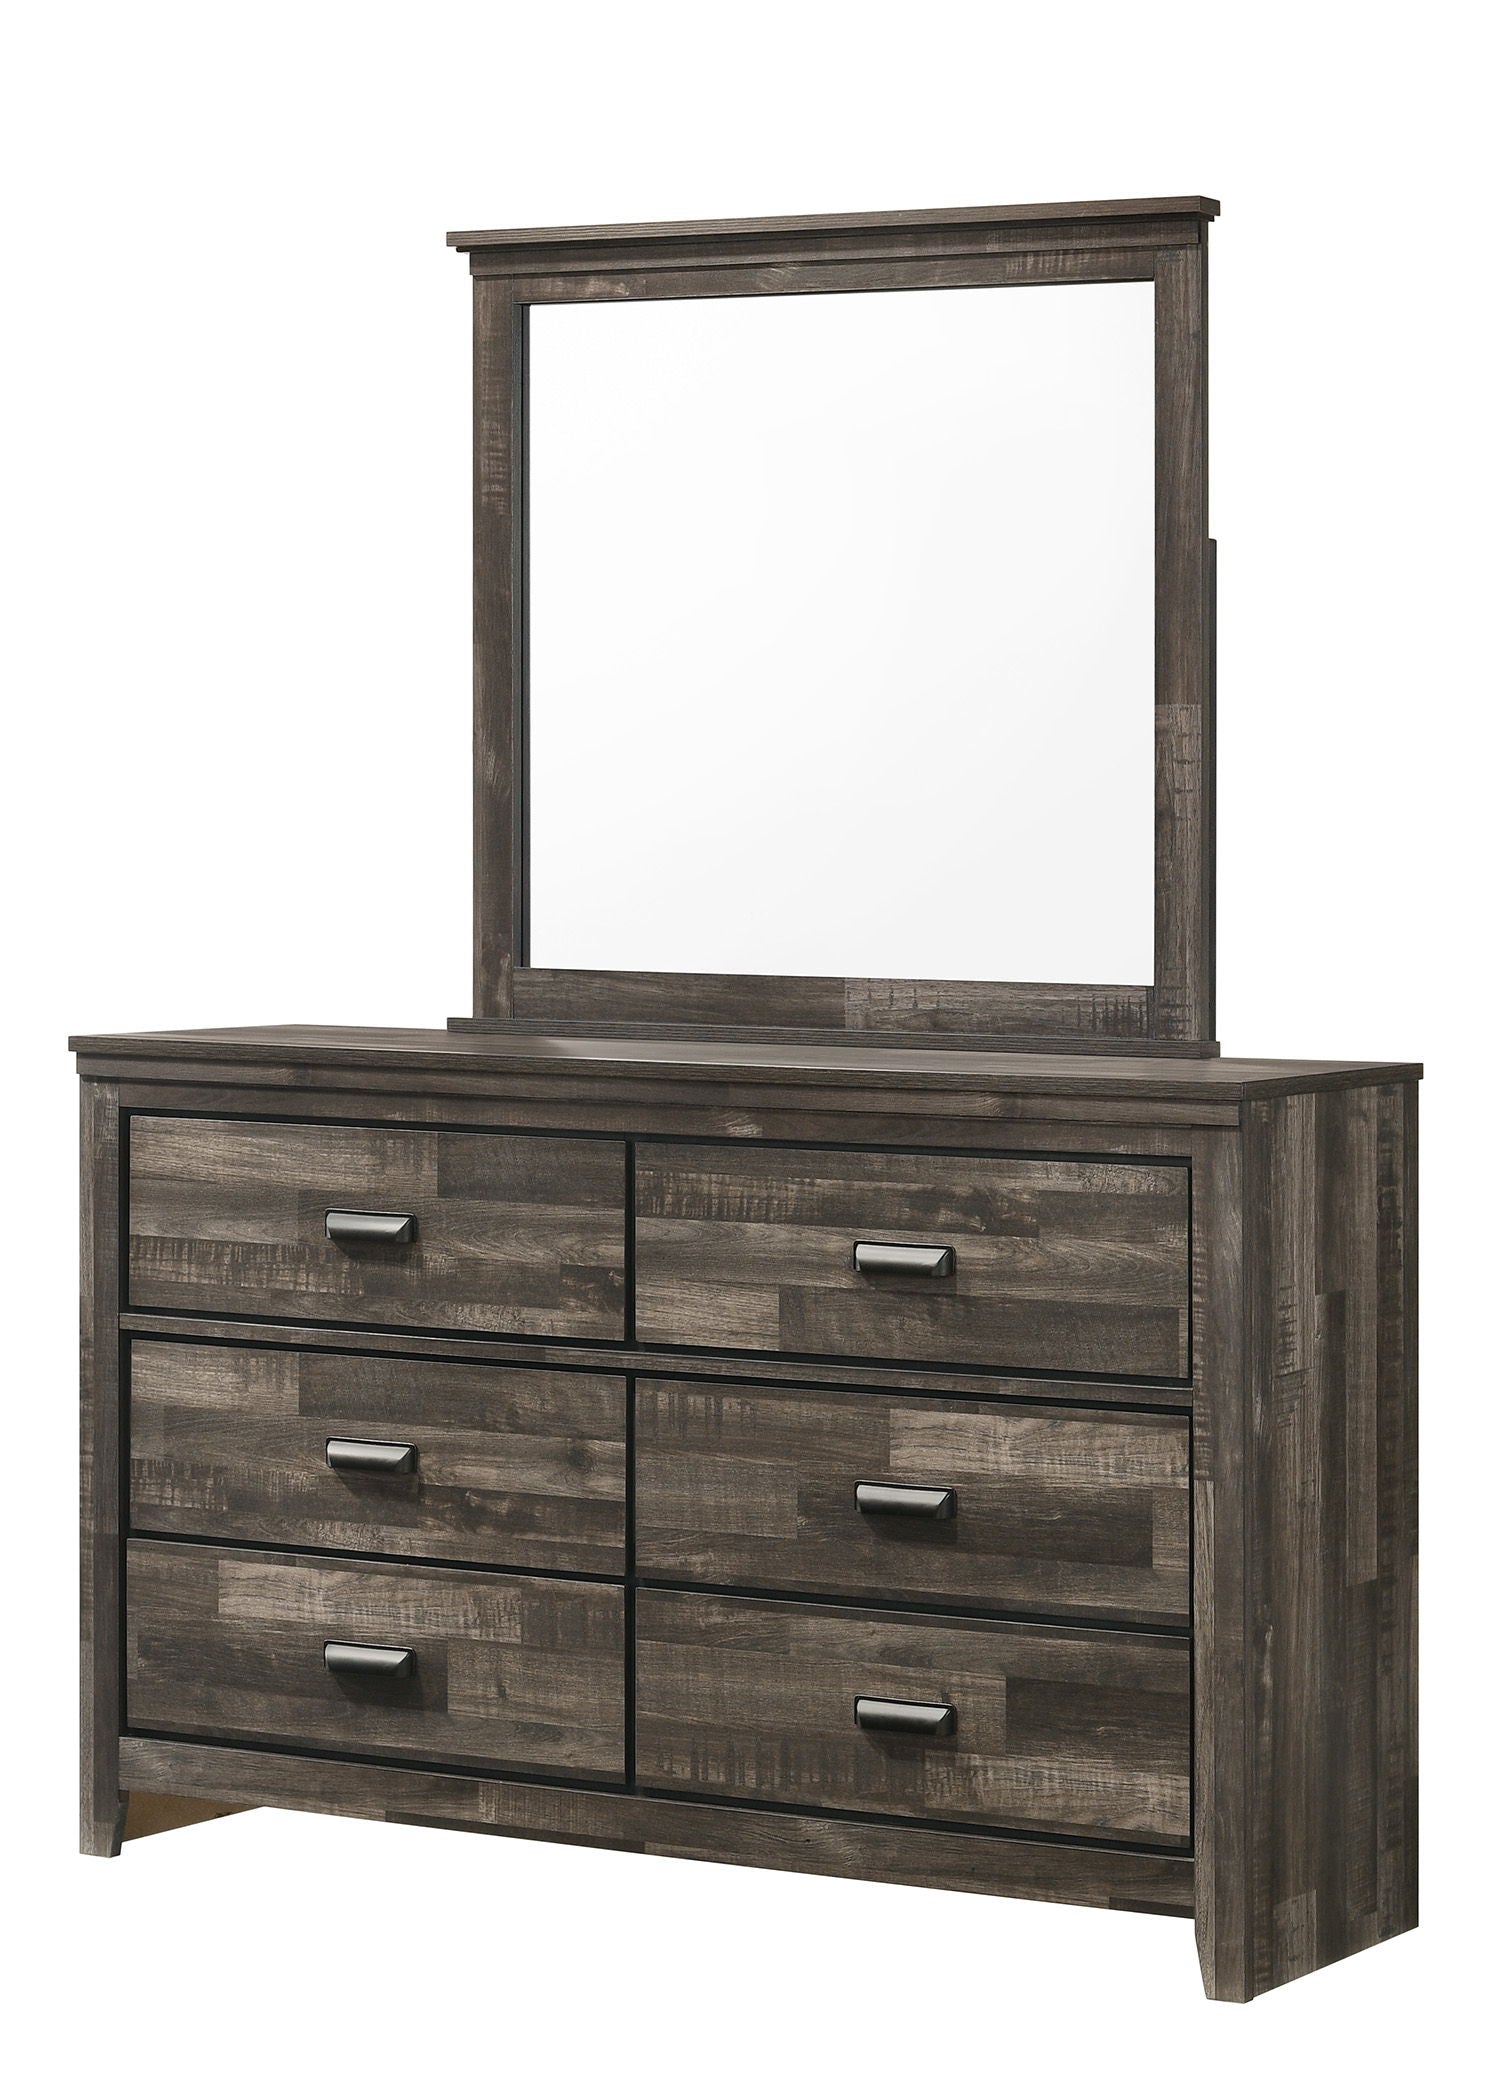 Carter - Dresser, Mirror